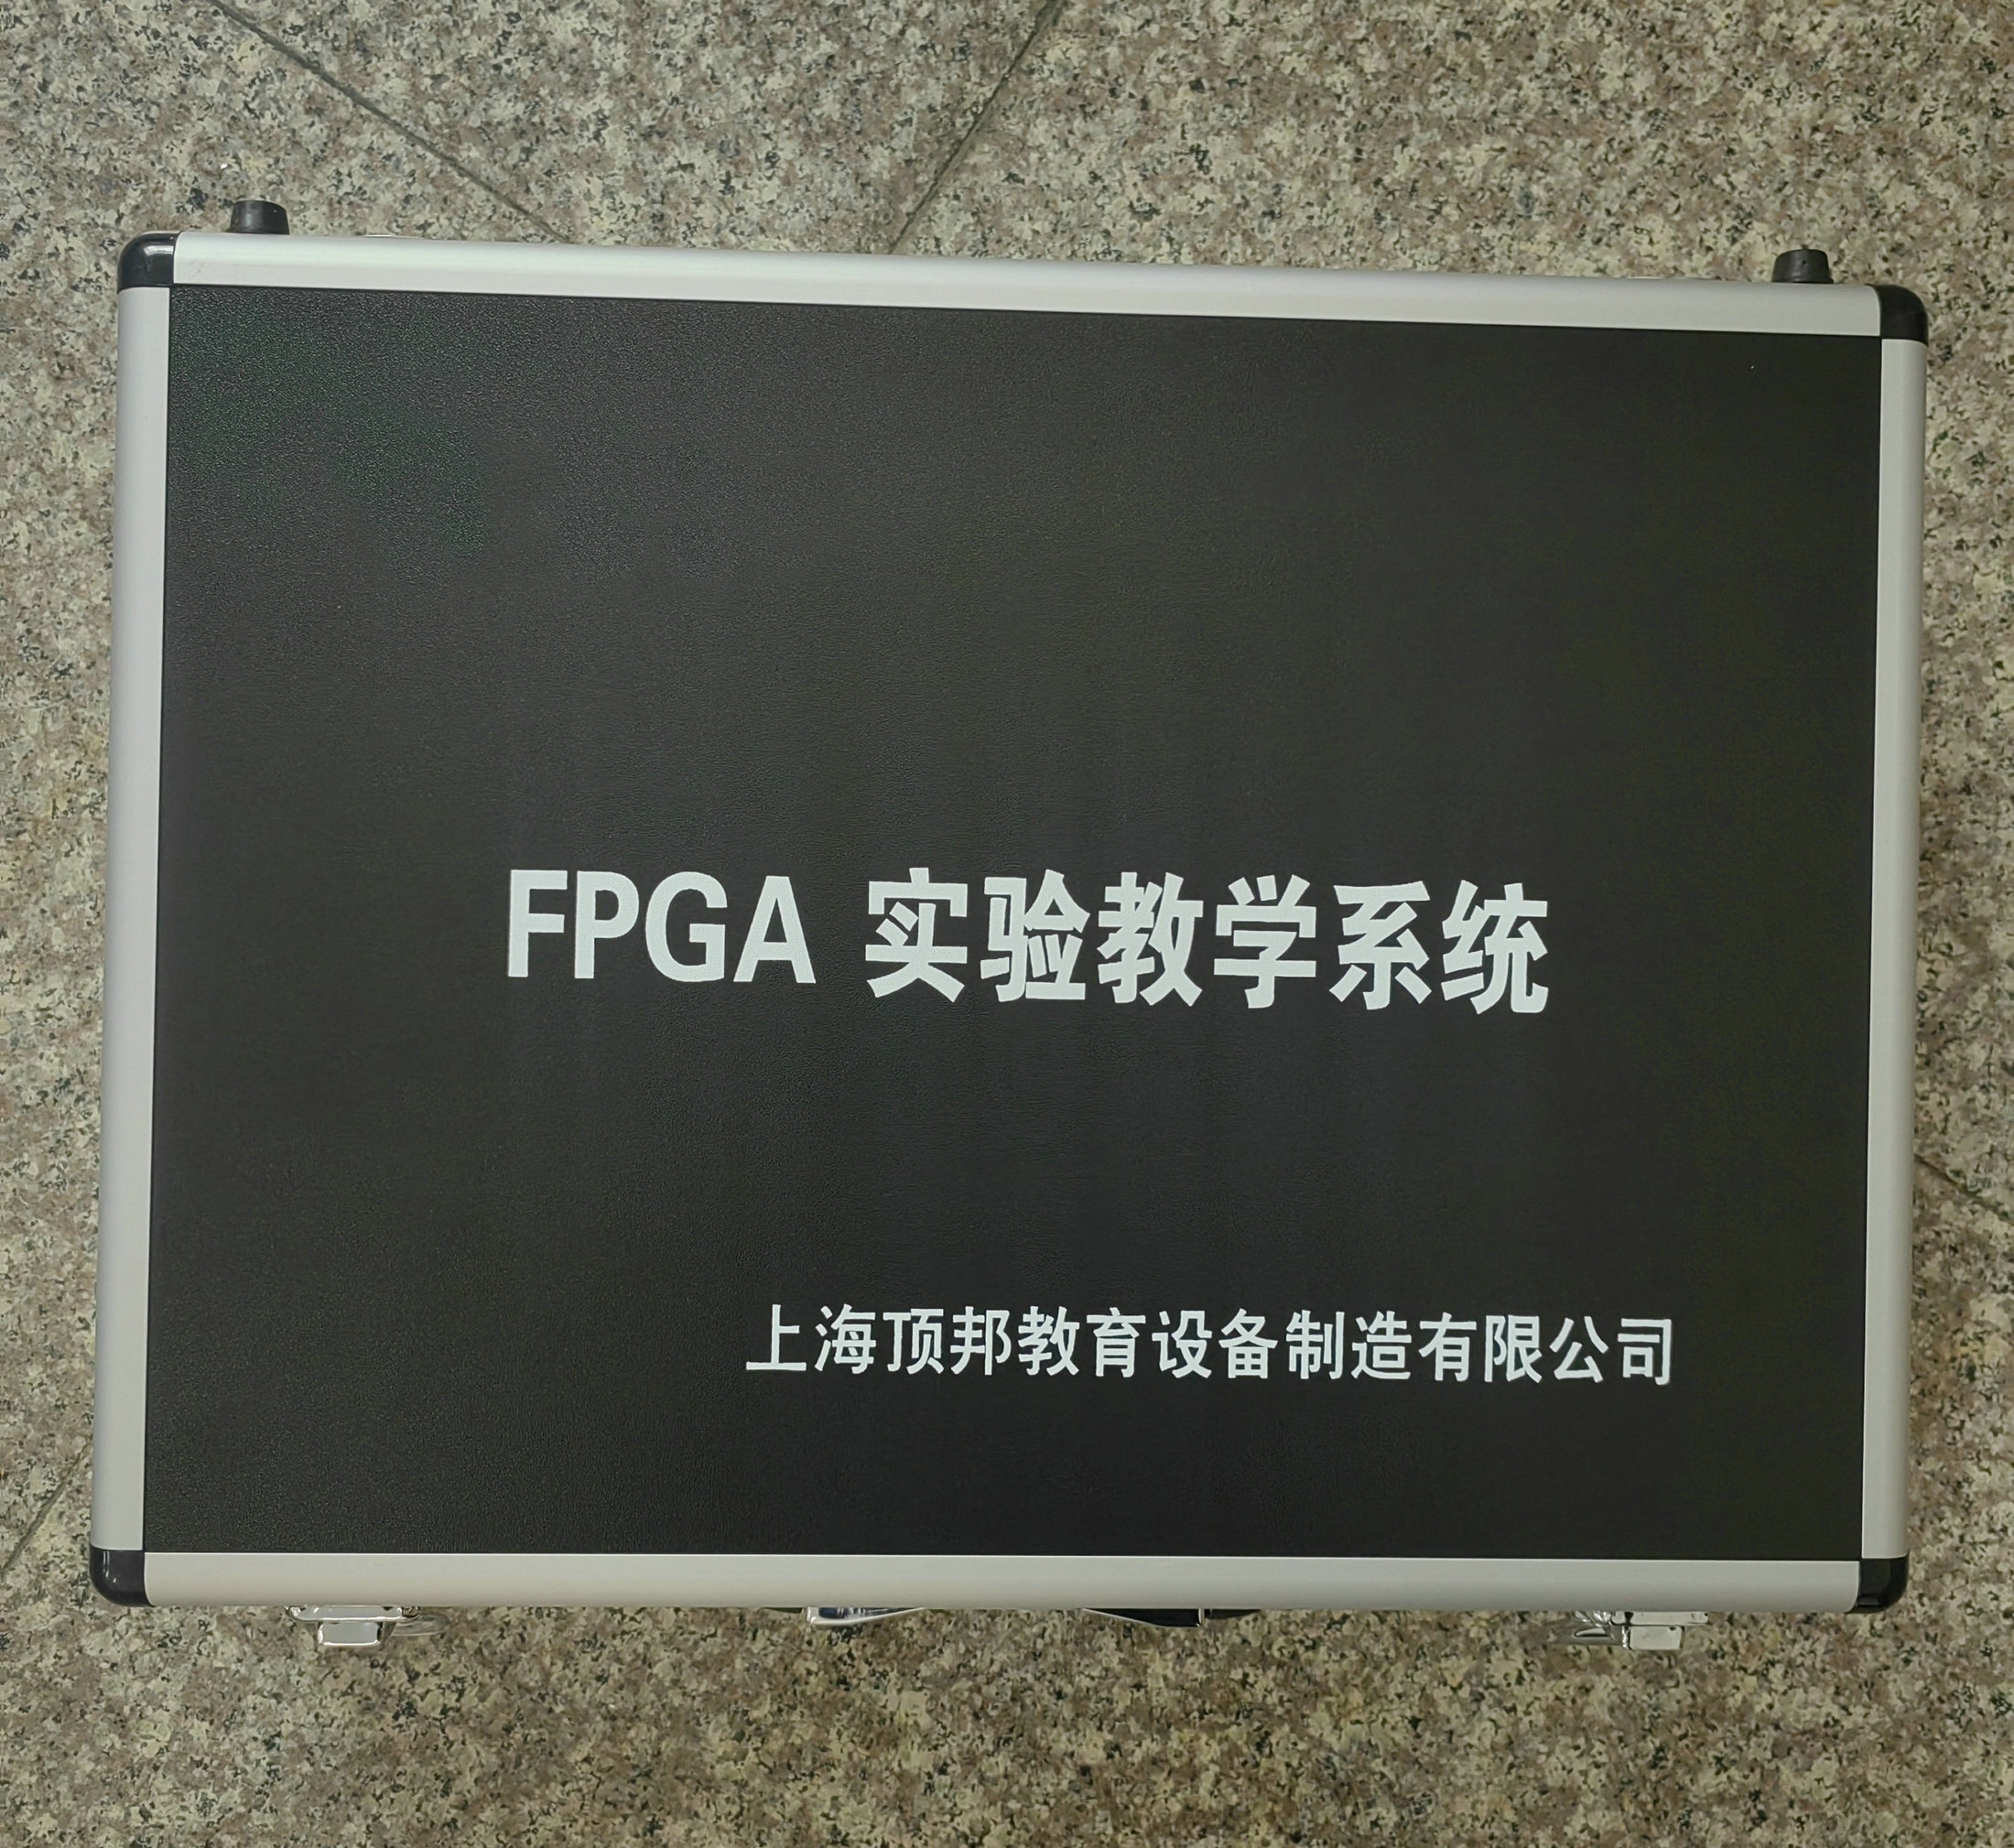 FPGA实验教学系统